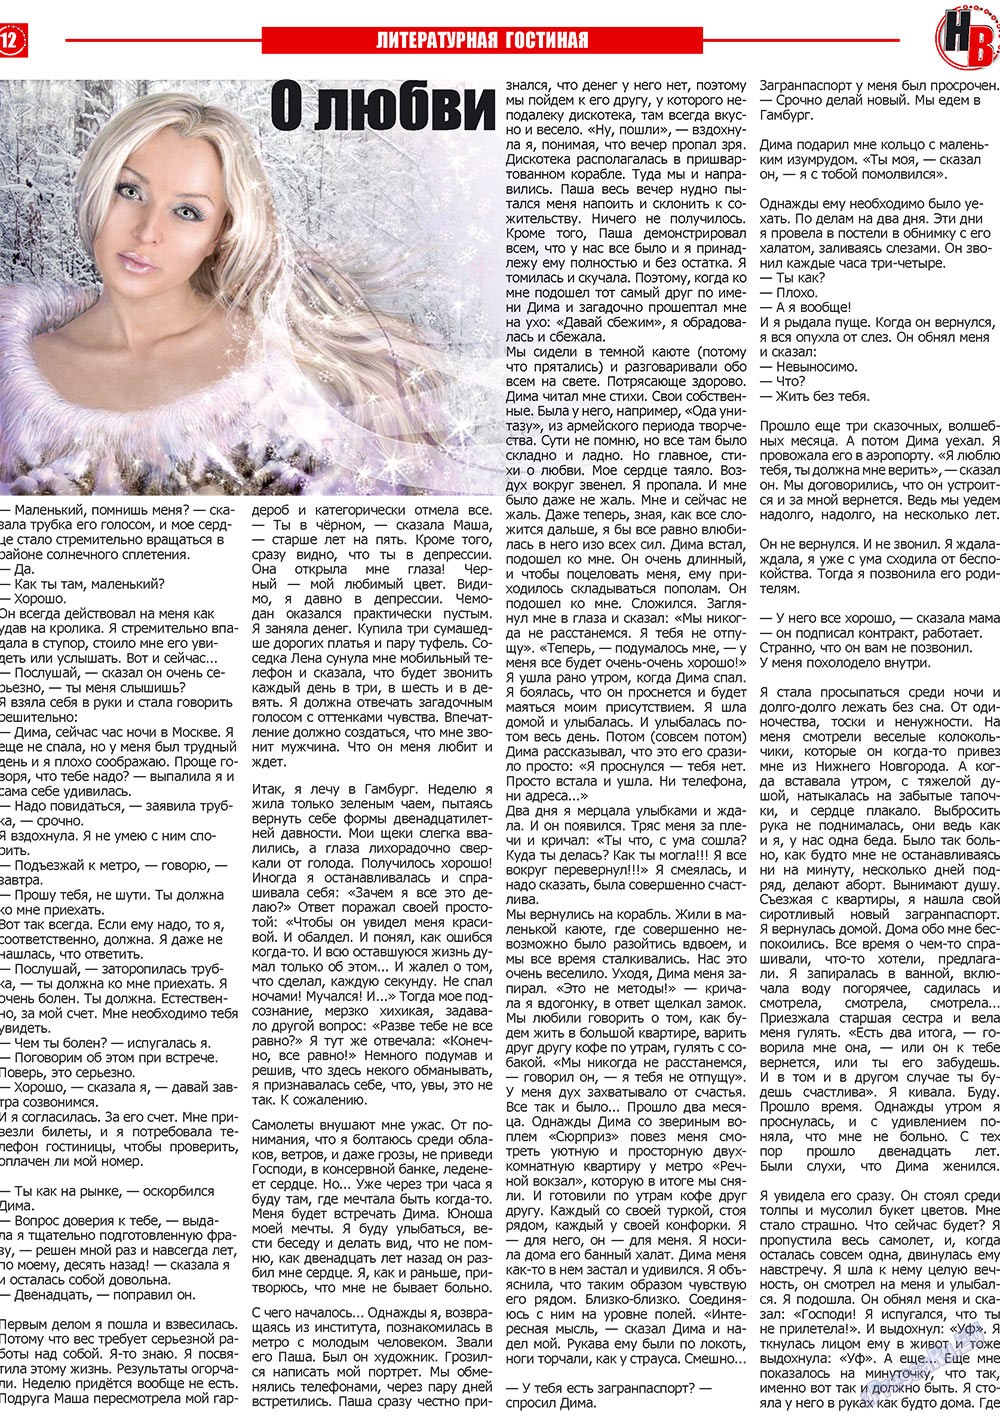 Наше время, газета. 2010 №1 стр.12